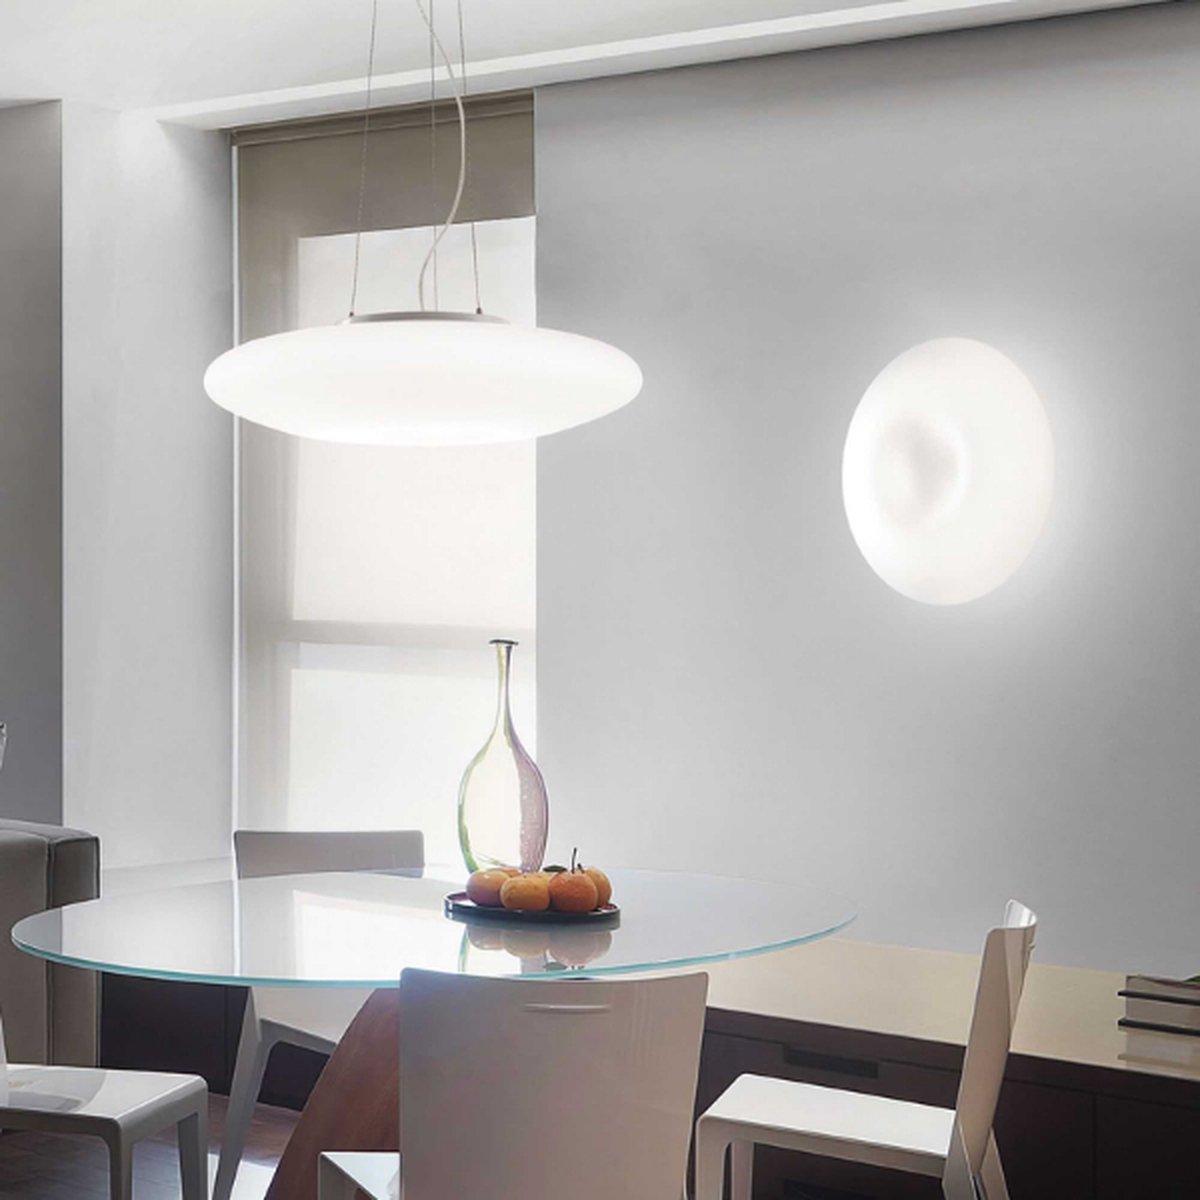 Ideal Lux - Glory - Hanglamp - Ø40cm - Metaal - E27 - Wit - Voor binnen - Lampen - Woonkamer - Eetkamer - Keuken